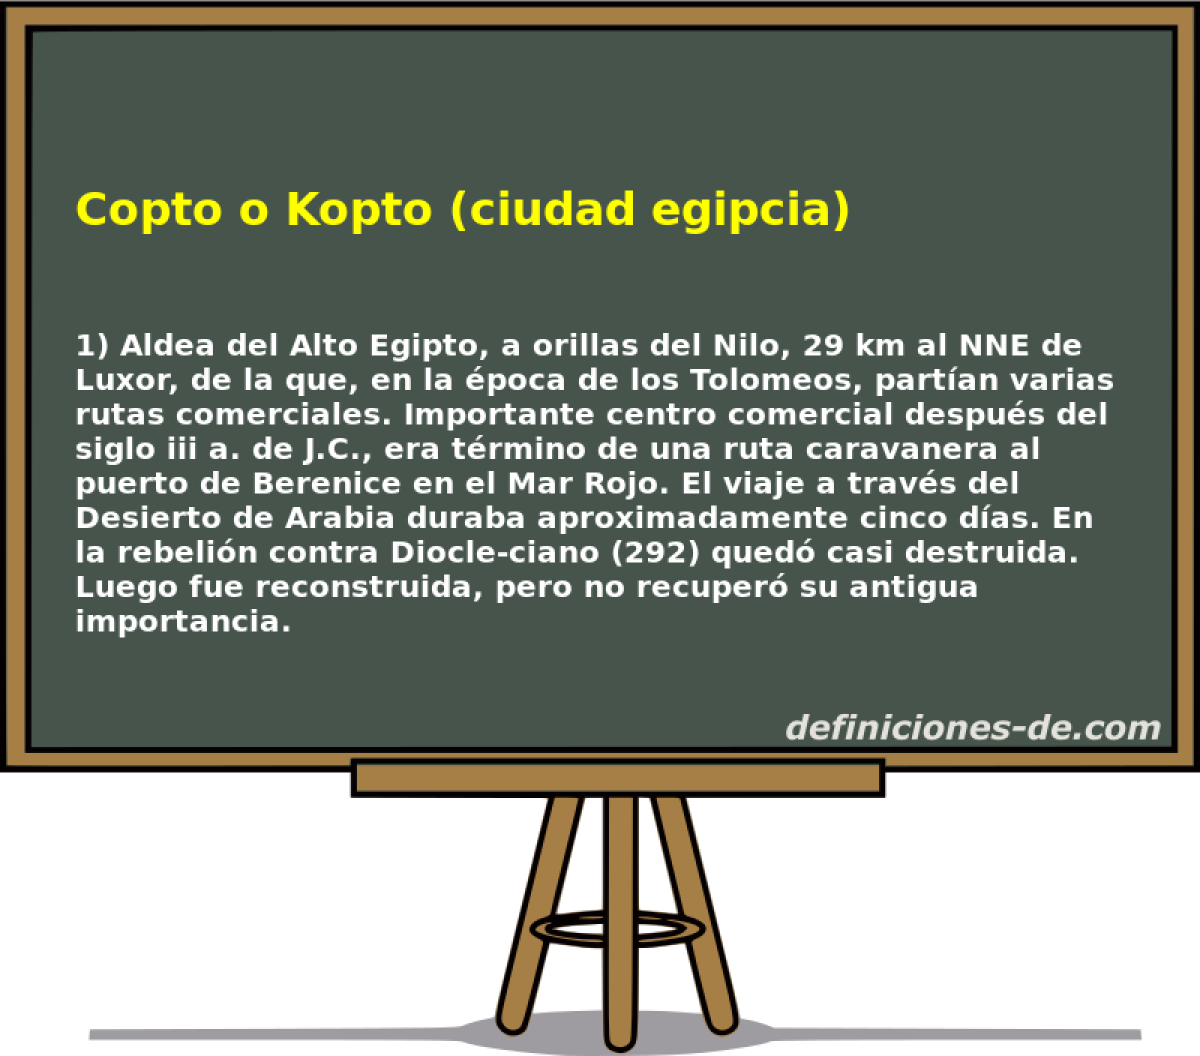 Copto o Kopto (ciudad egipcia) 